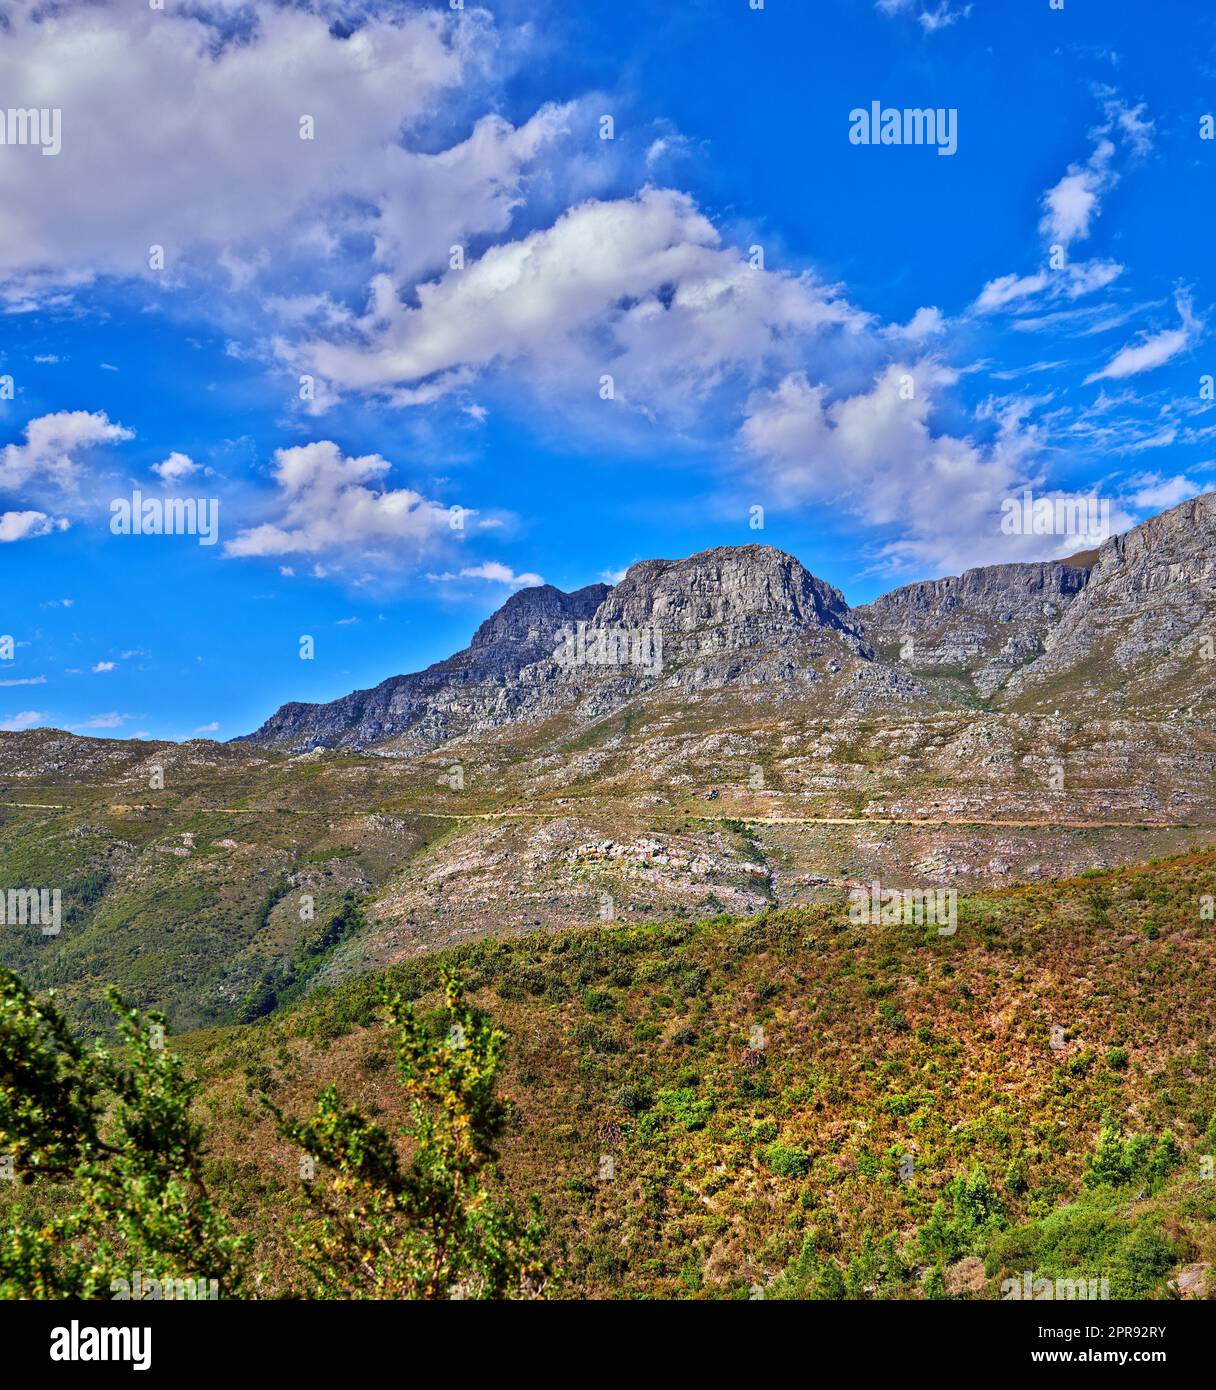 Schöner Berg in friedlicher felsiger Landschaft an einem sonnigen Tag in Kapstadt. Lebhaftes Land mit üppig grünen Büschen und Pflanzen, die in Harmonie in der Natur wachsen. Entspannende, beruhigende Aussicht auf Südafrika Stockfoto